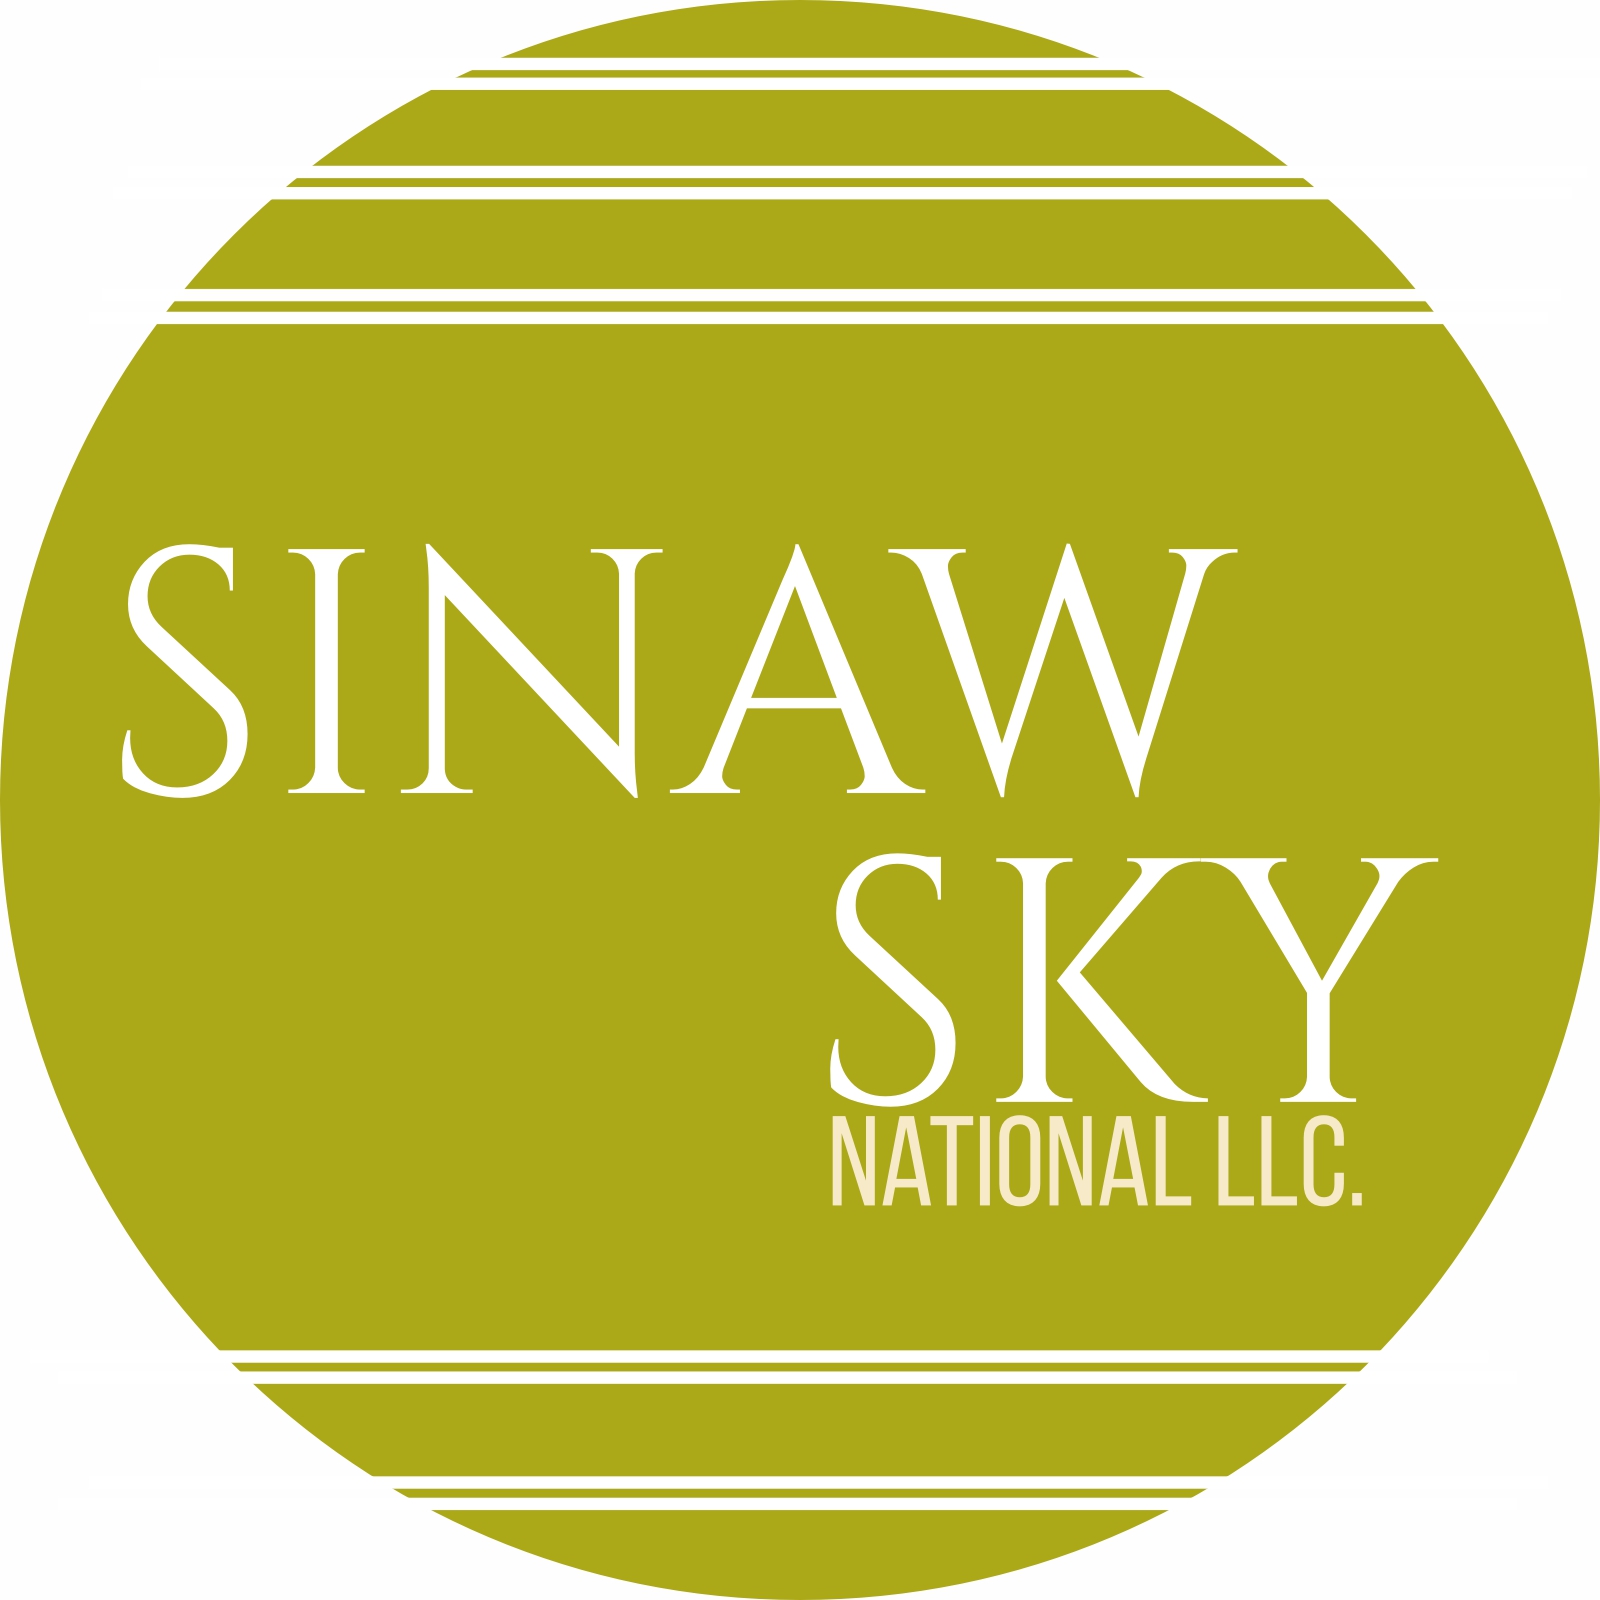 Sinaw Sky National LLC